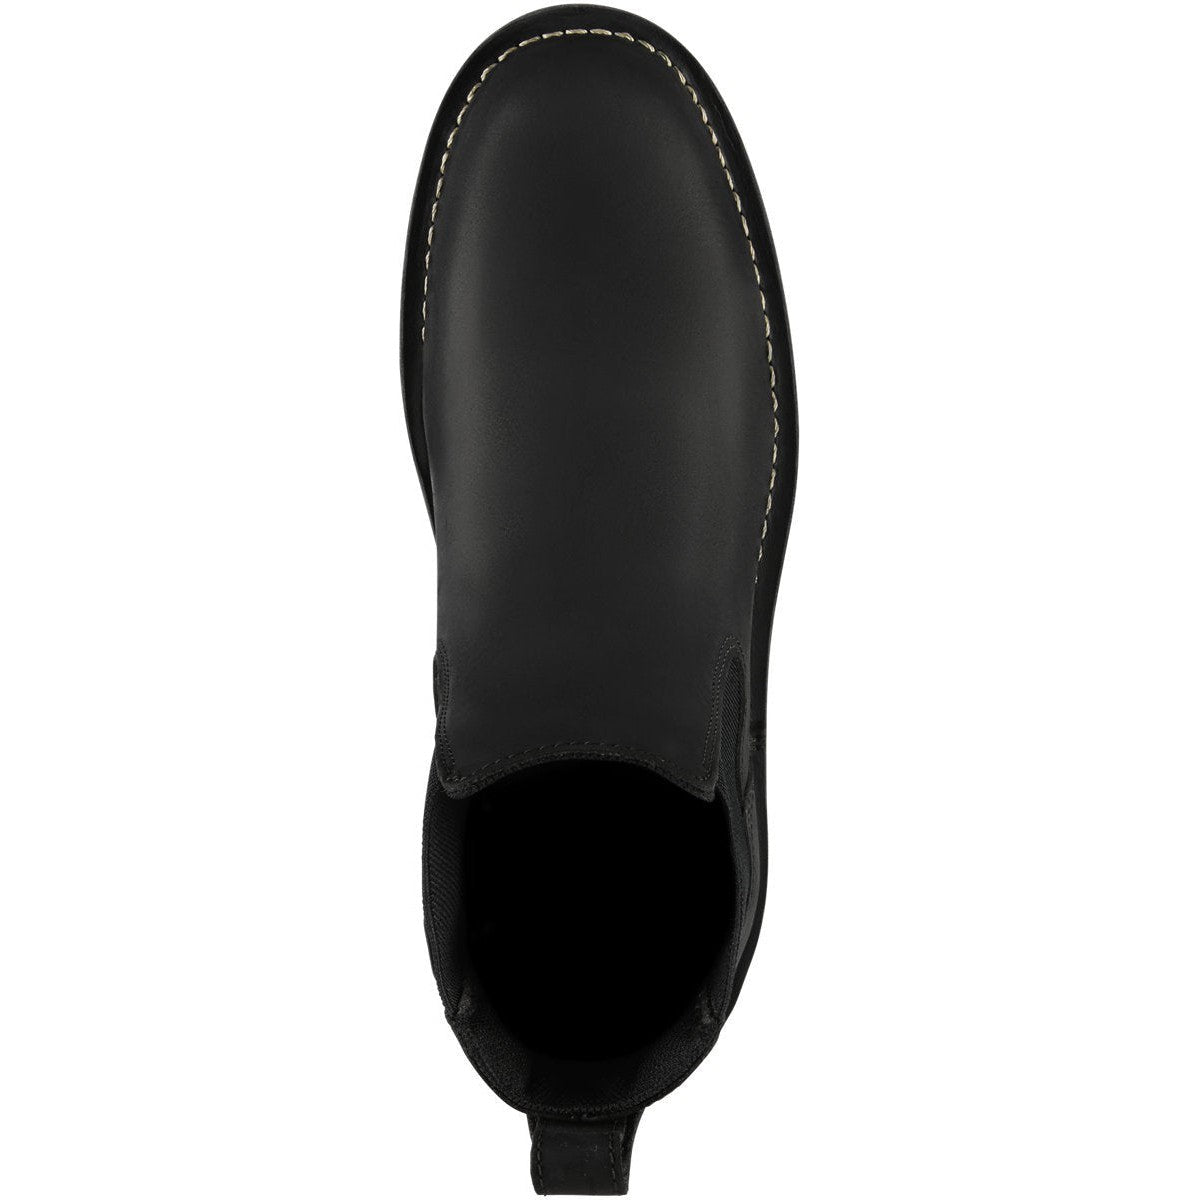 Danner Men's Bull Run 6" Plain Toe Chelsea Work Boot -Black- 15483  - Overlook Boots